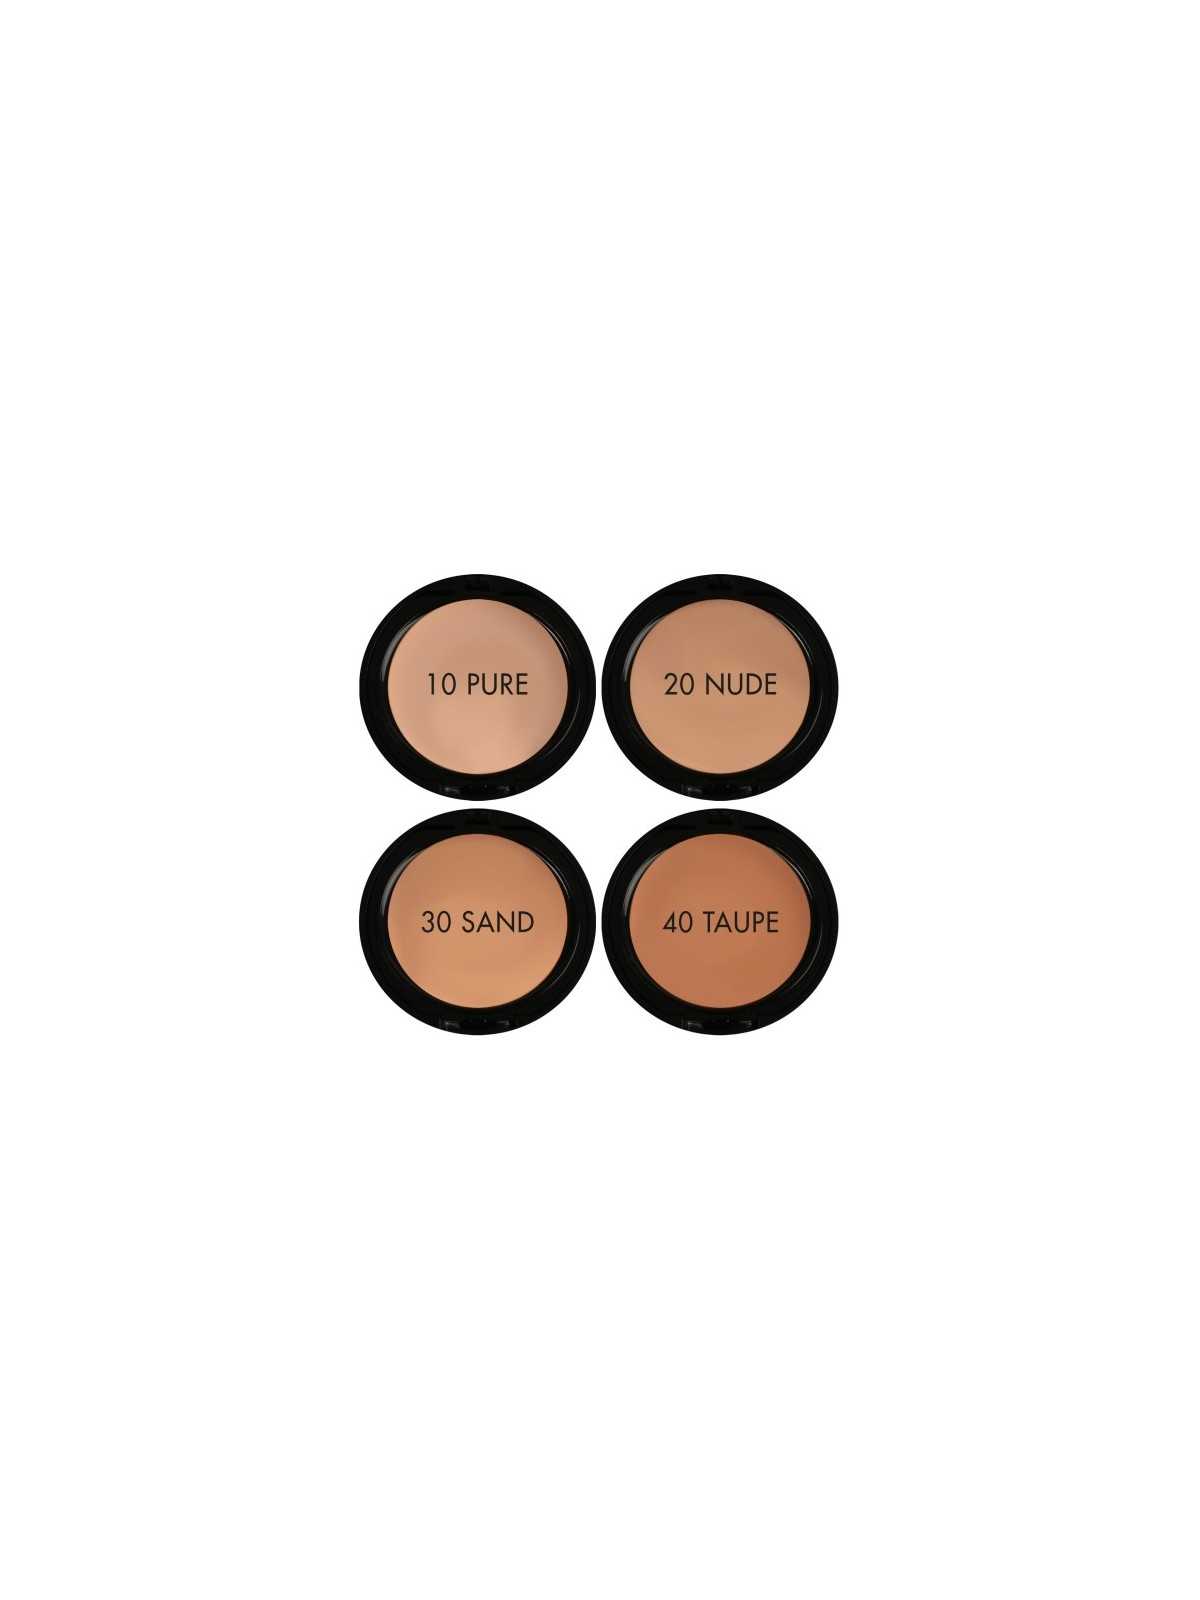 Comprar Base de maquillaje Perfect Compact Foundation 50+ (20 NUDE) en Maquillaje por sólo 10,95 € o un precio específico de 10,95 € en Thalie Care